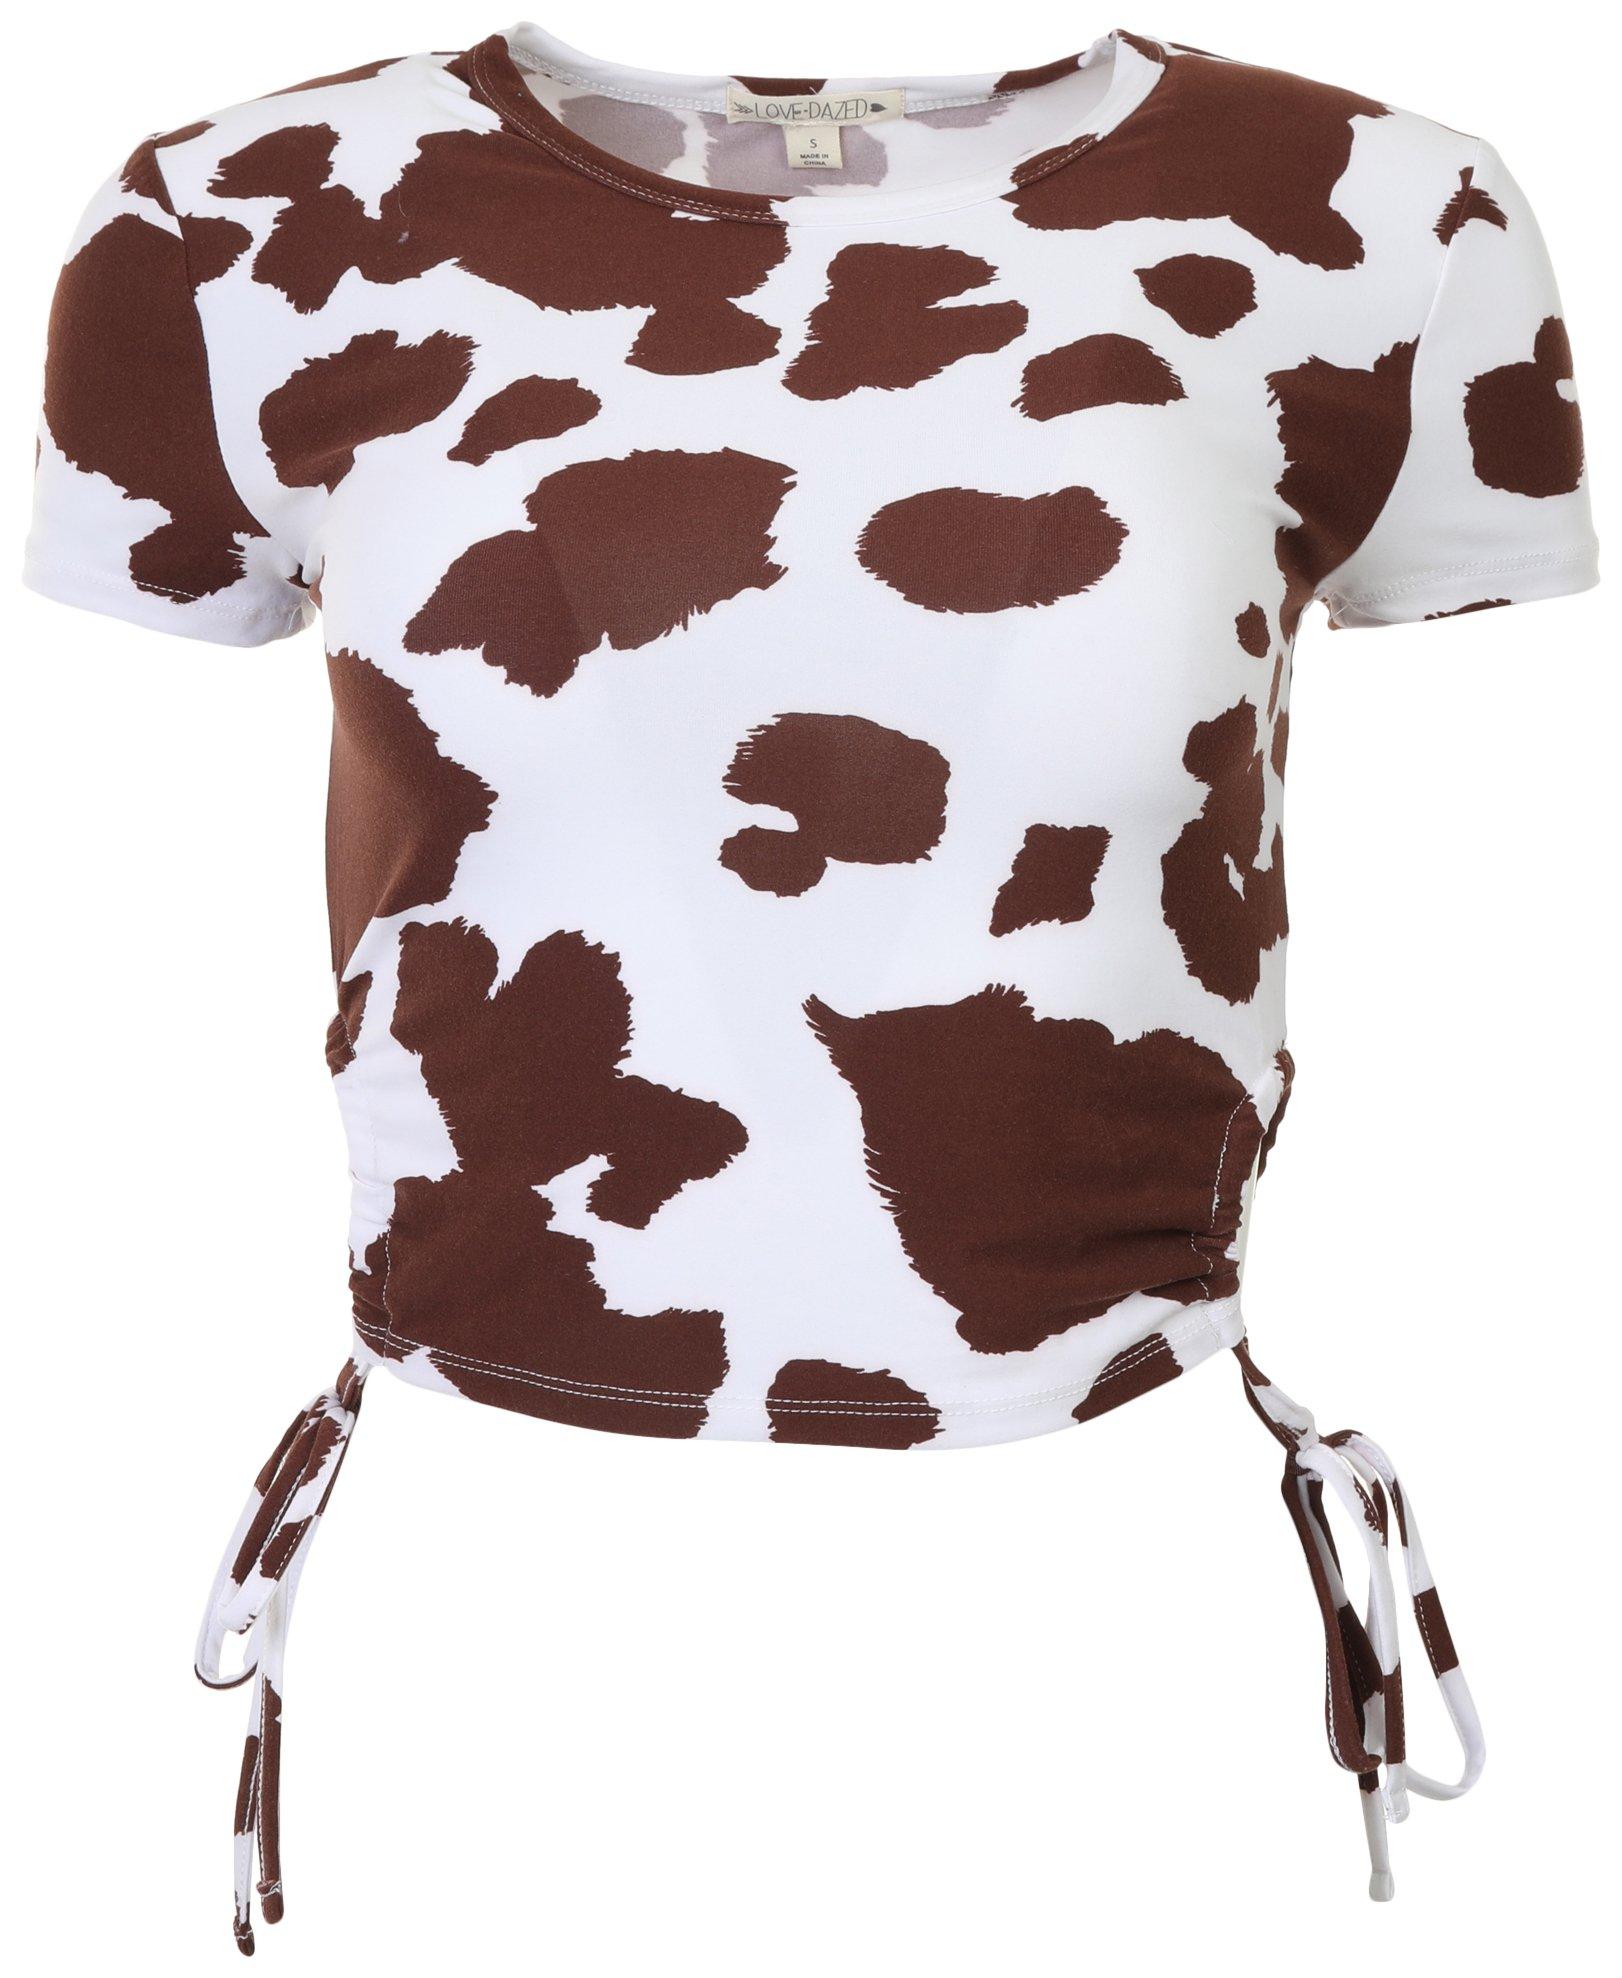 Juniors Cow Print Side Tie Crop Top